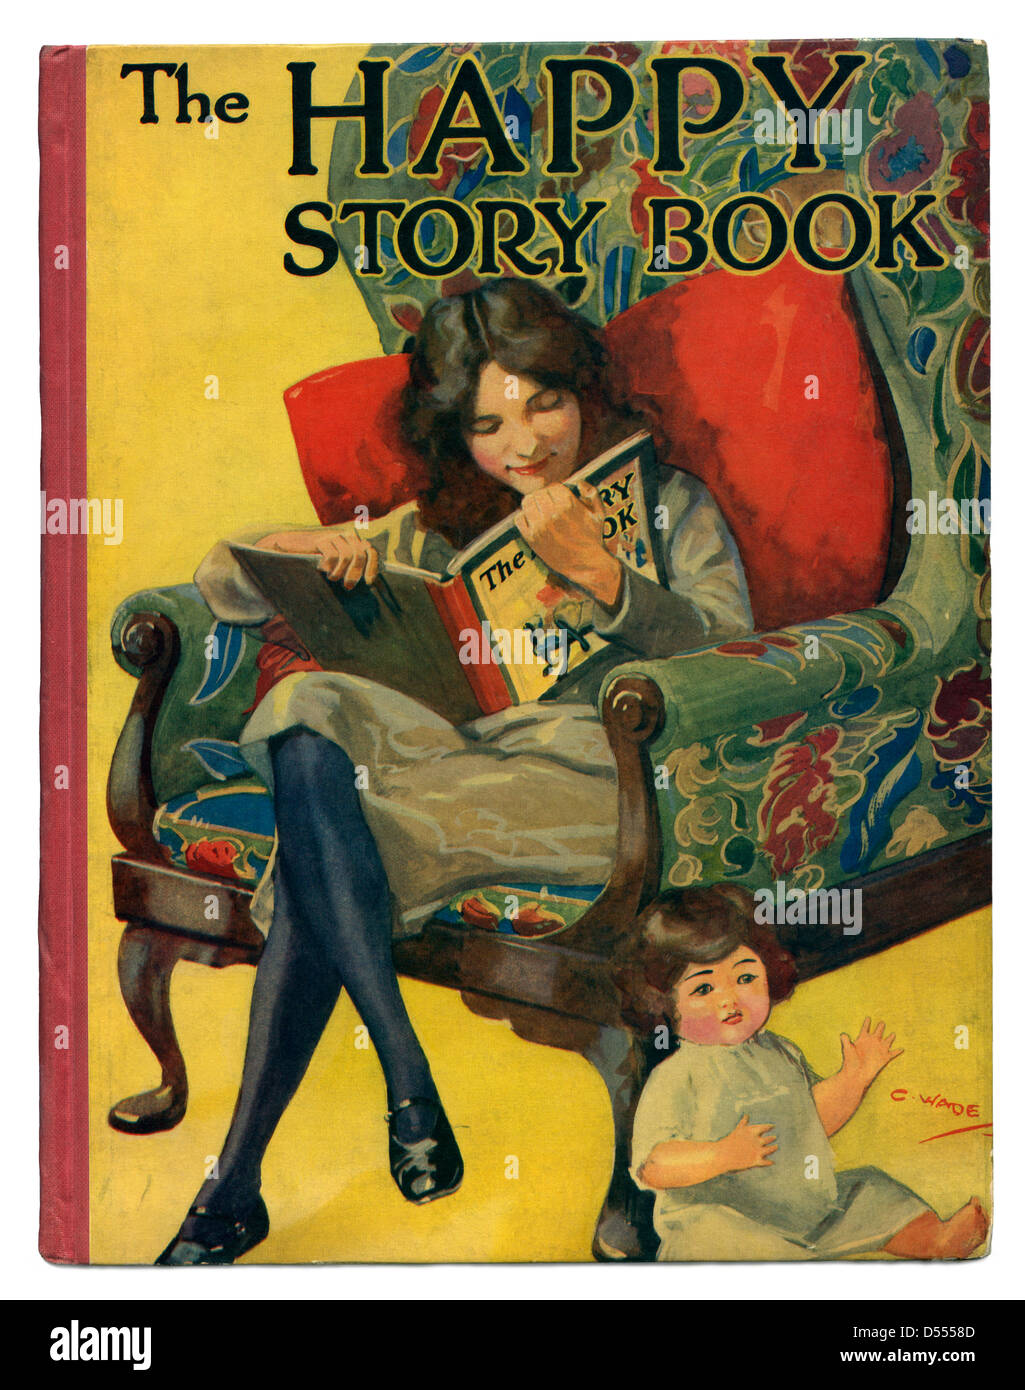 Die glückliche Geschichtebuch vorgestellten eine Mädchen das gleiche Buch auf dem Cover. -ein Vintage Abdeckung ca. 1930 Stockfoto